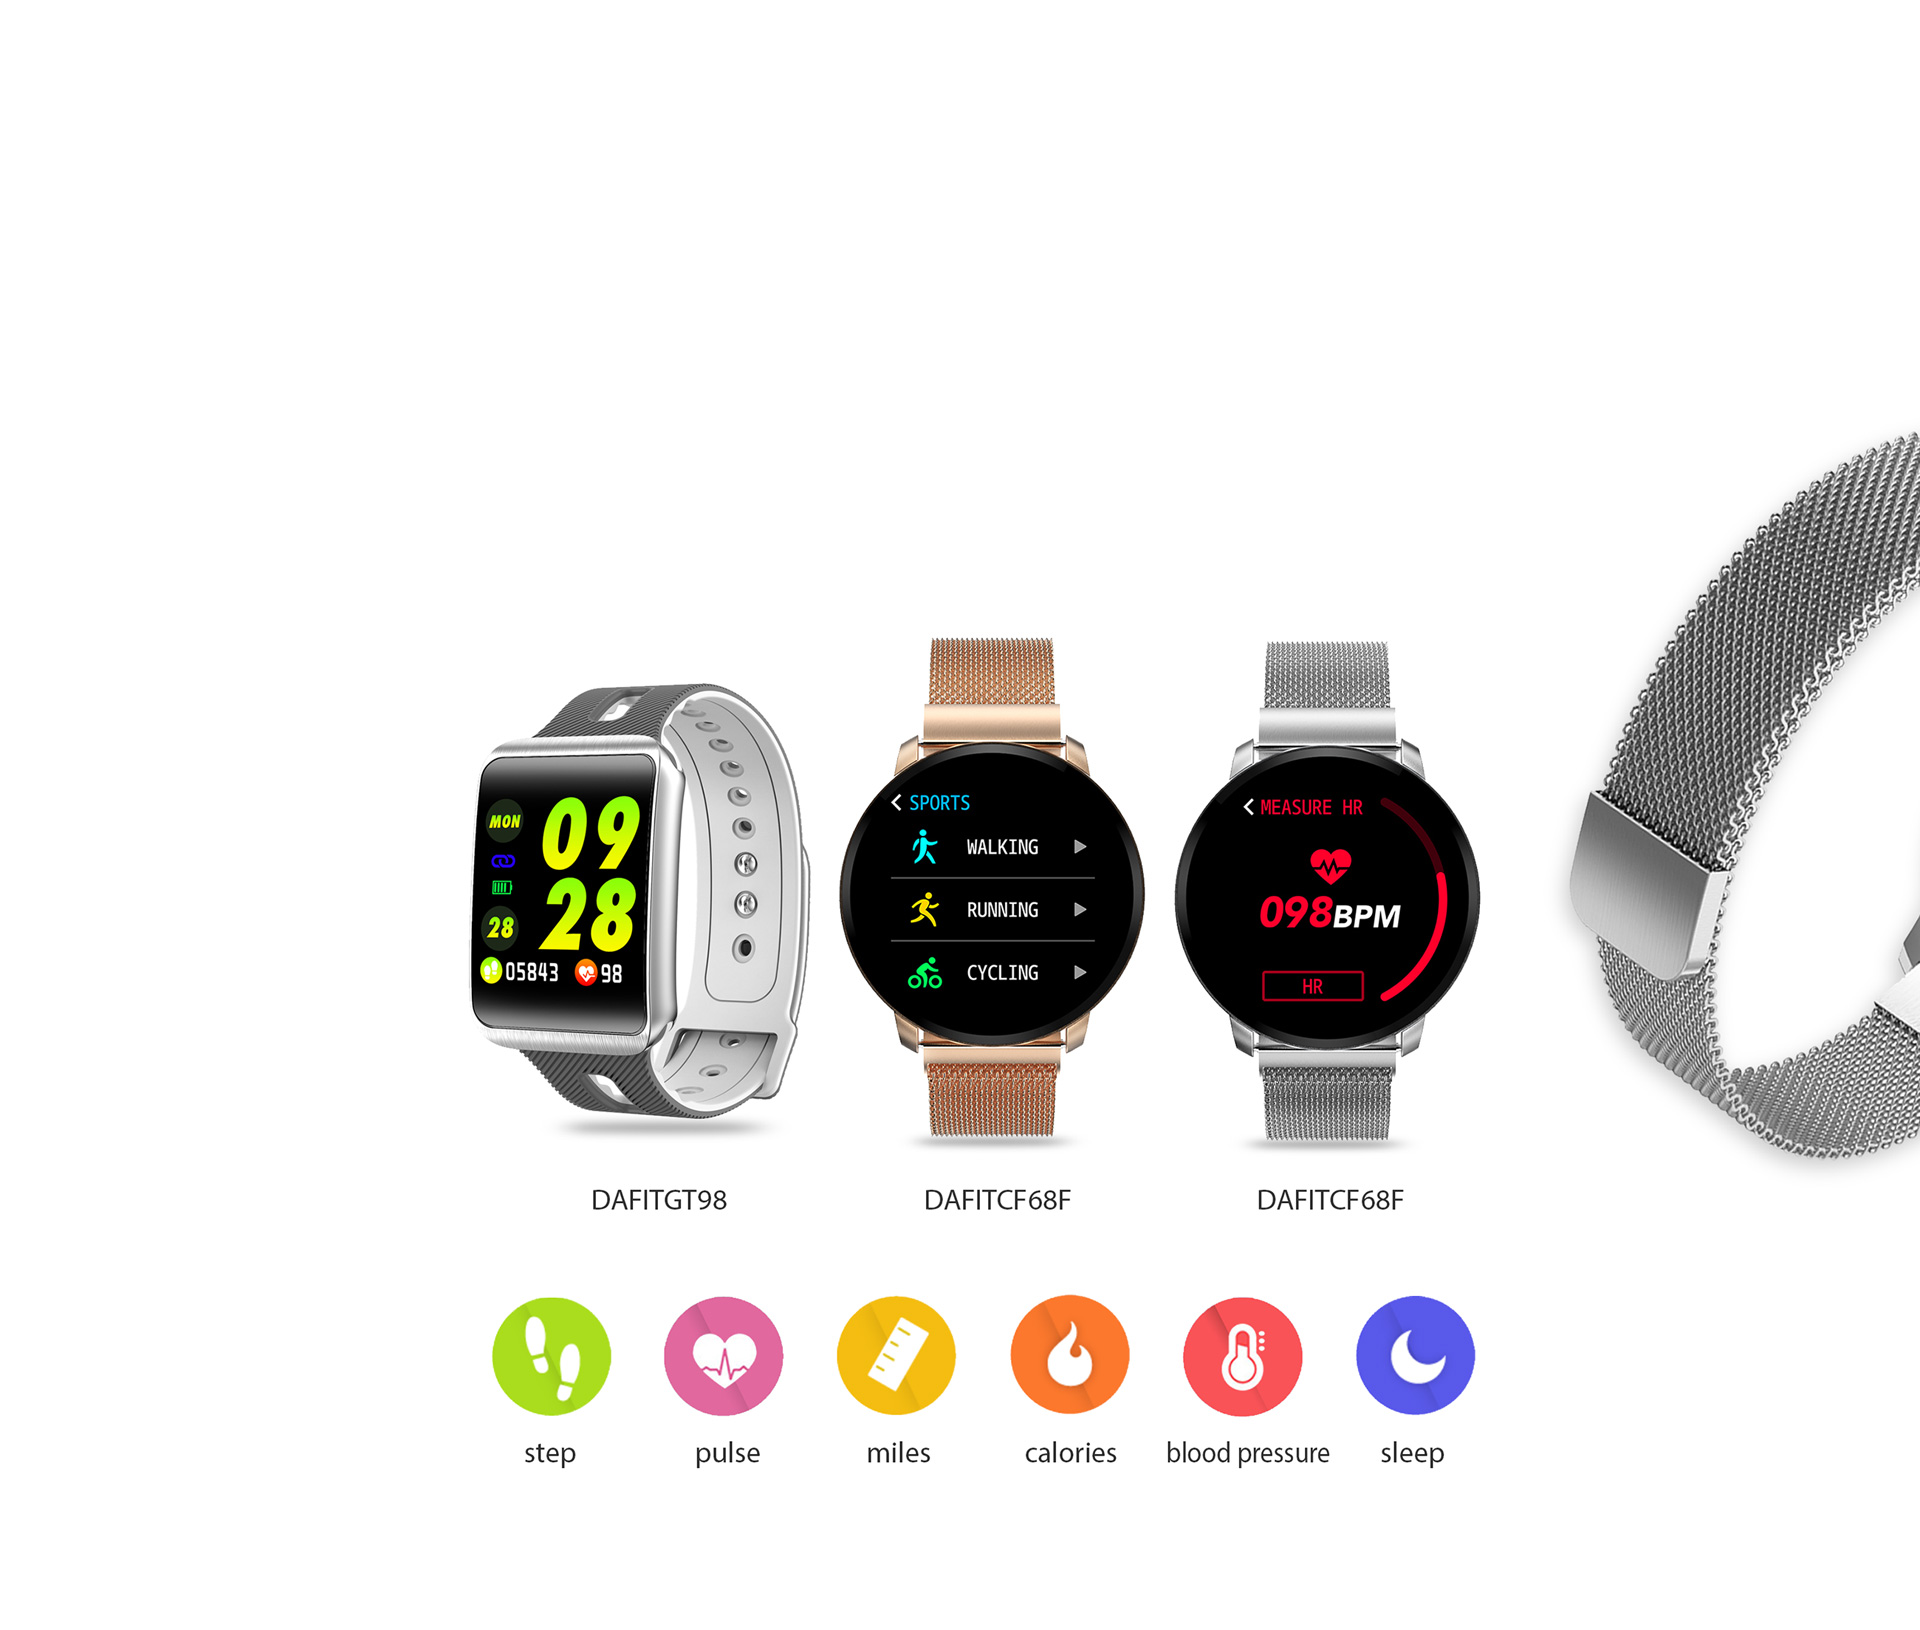 da fit smart watch Guide  Google Playত এপ